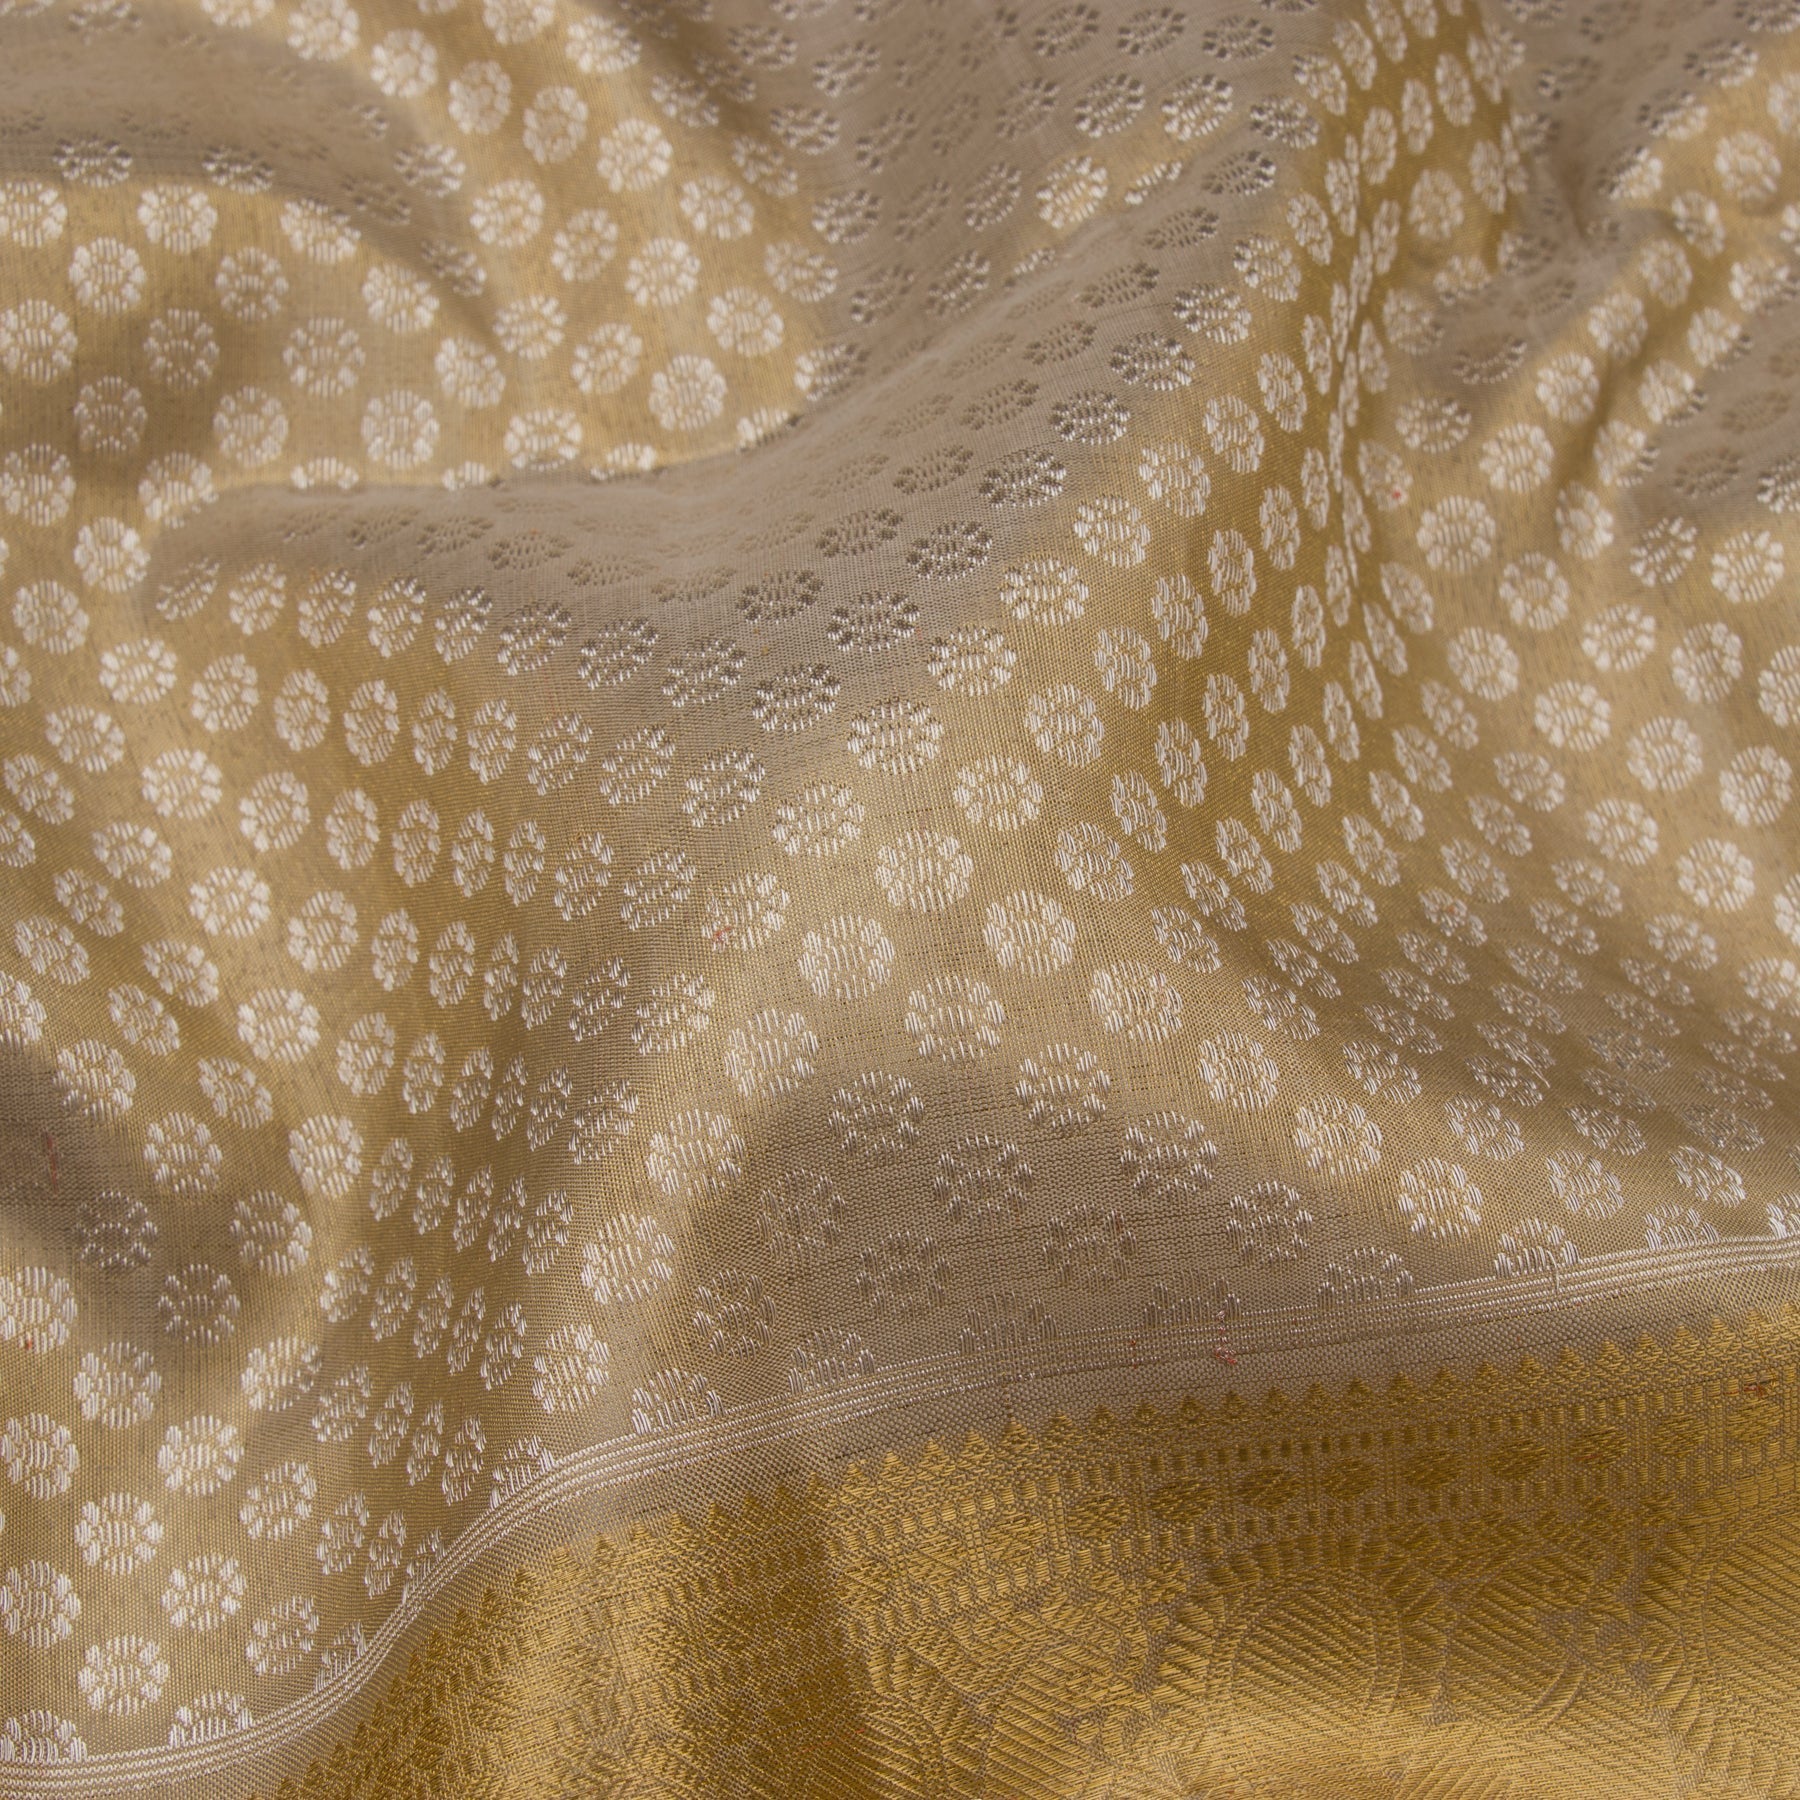 Kanakavalli Kanjivaram Silk Sari 22-110-HS001-00357 - Fabric View